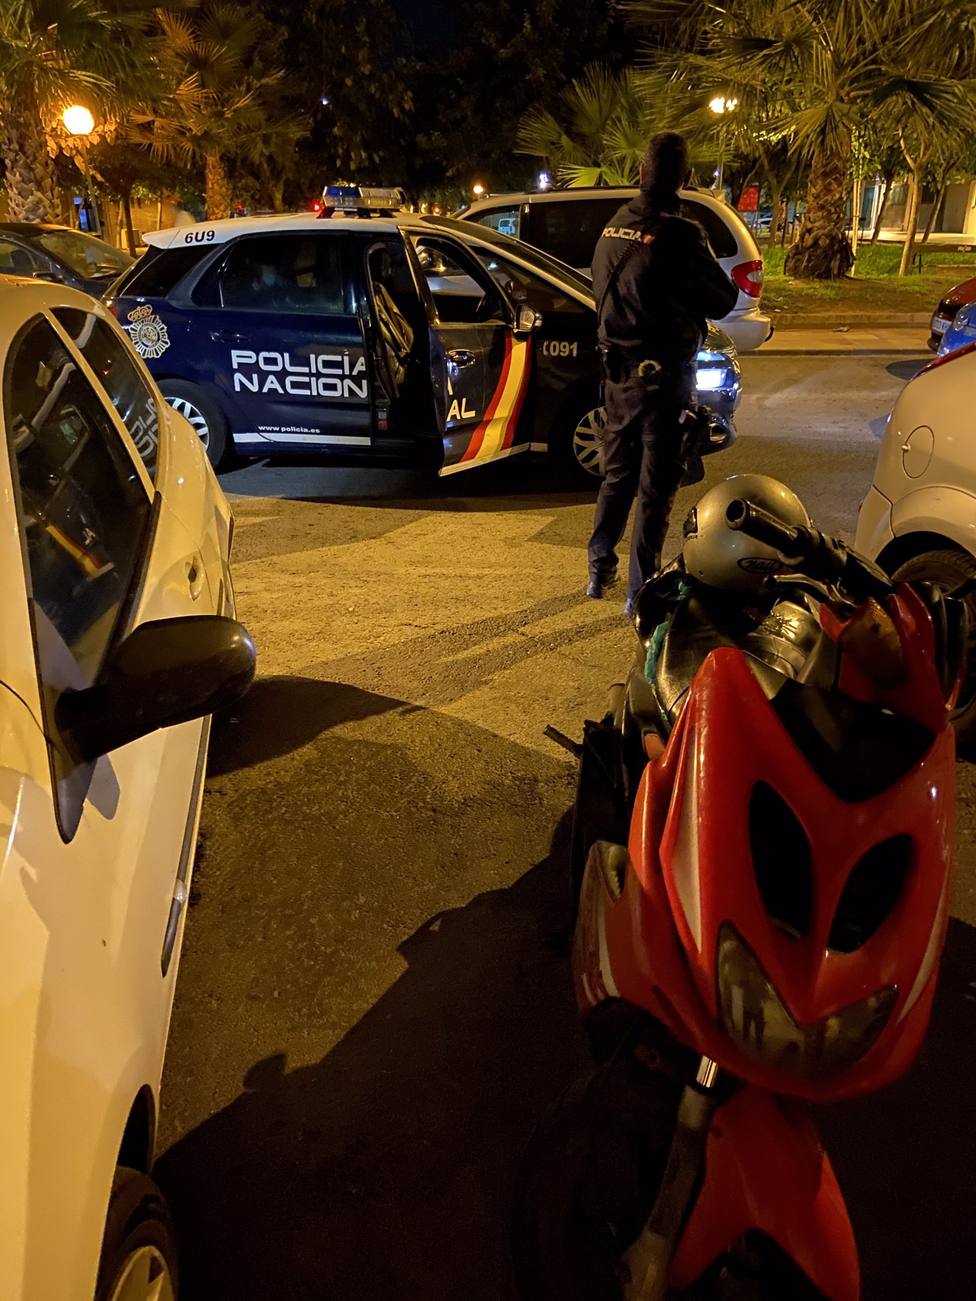 La Policía Nacional detiene dos días consecutivos a la misma persona por robar ciclomotores